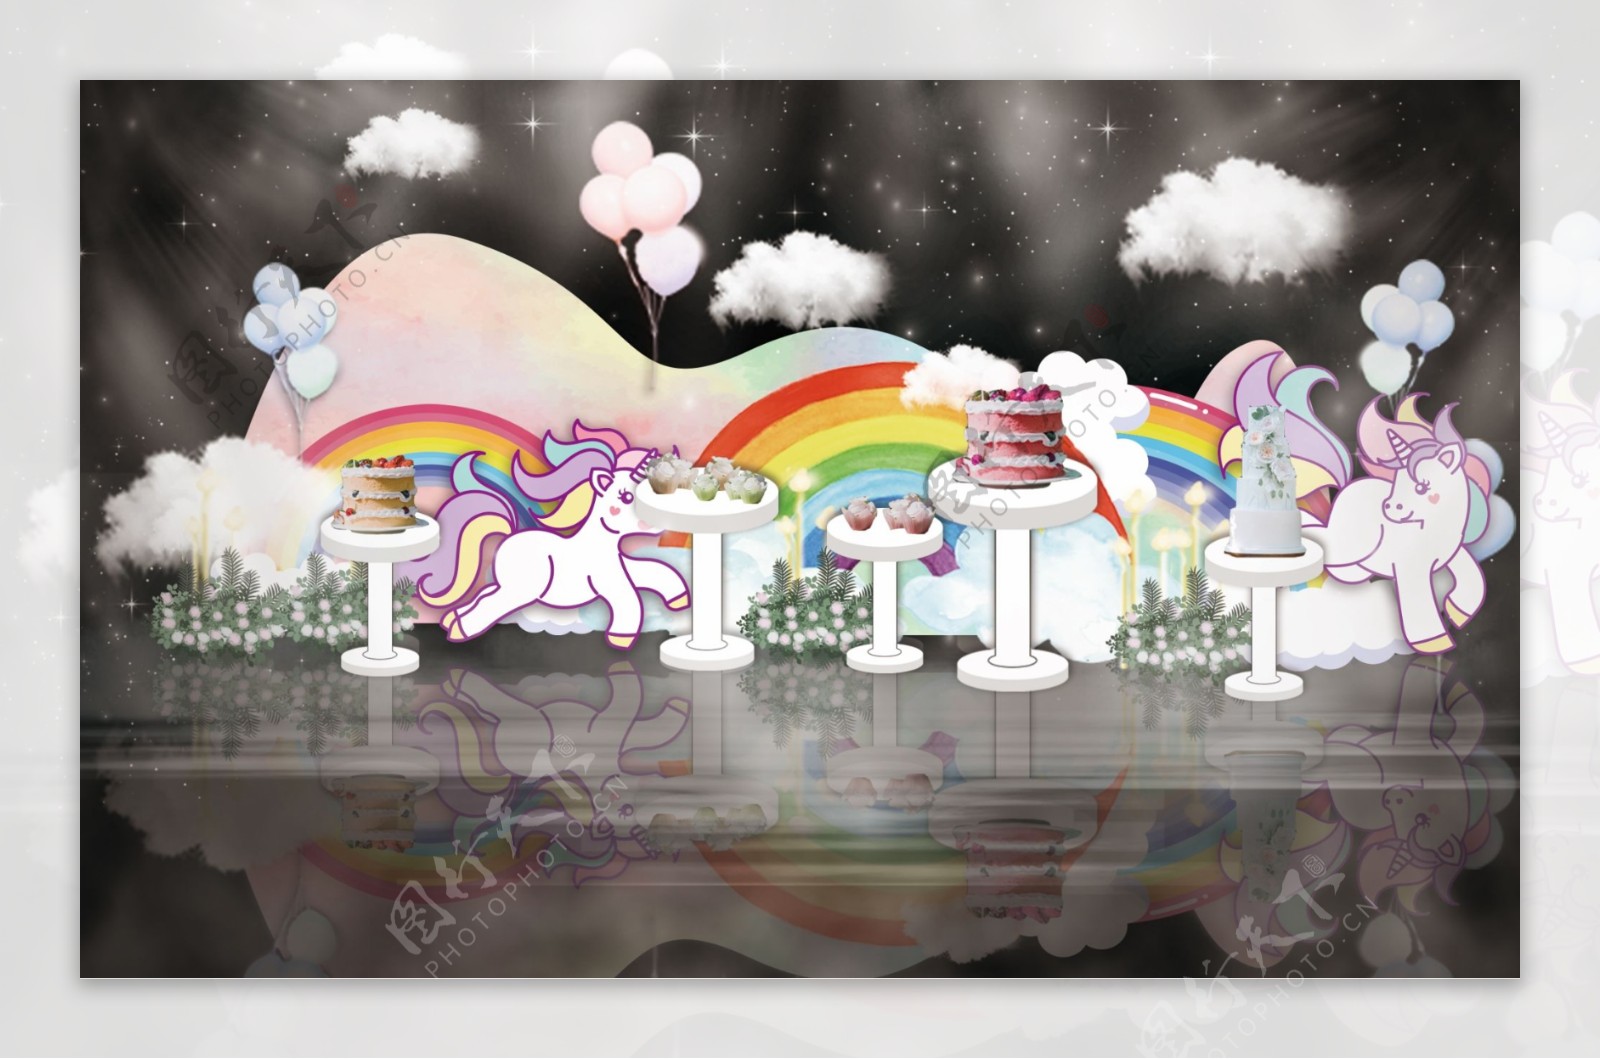 彩虹独角兽主题小清新婚礼甜品区工装效果图